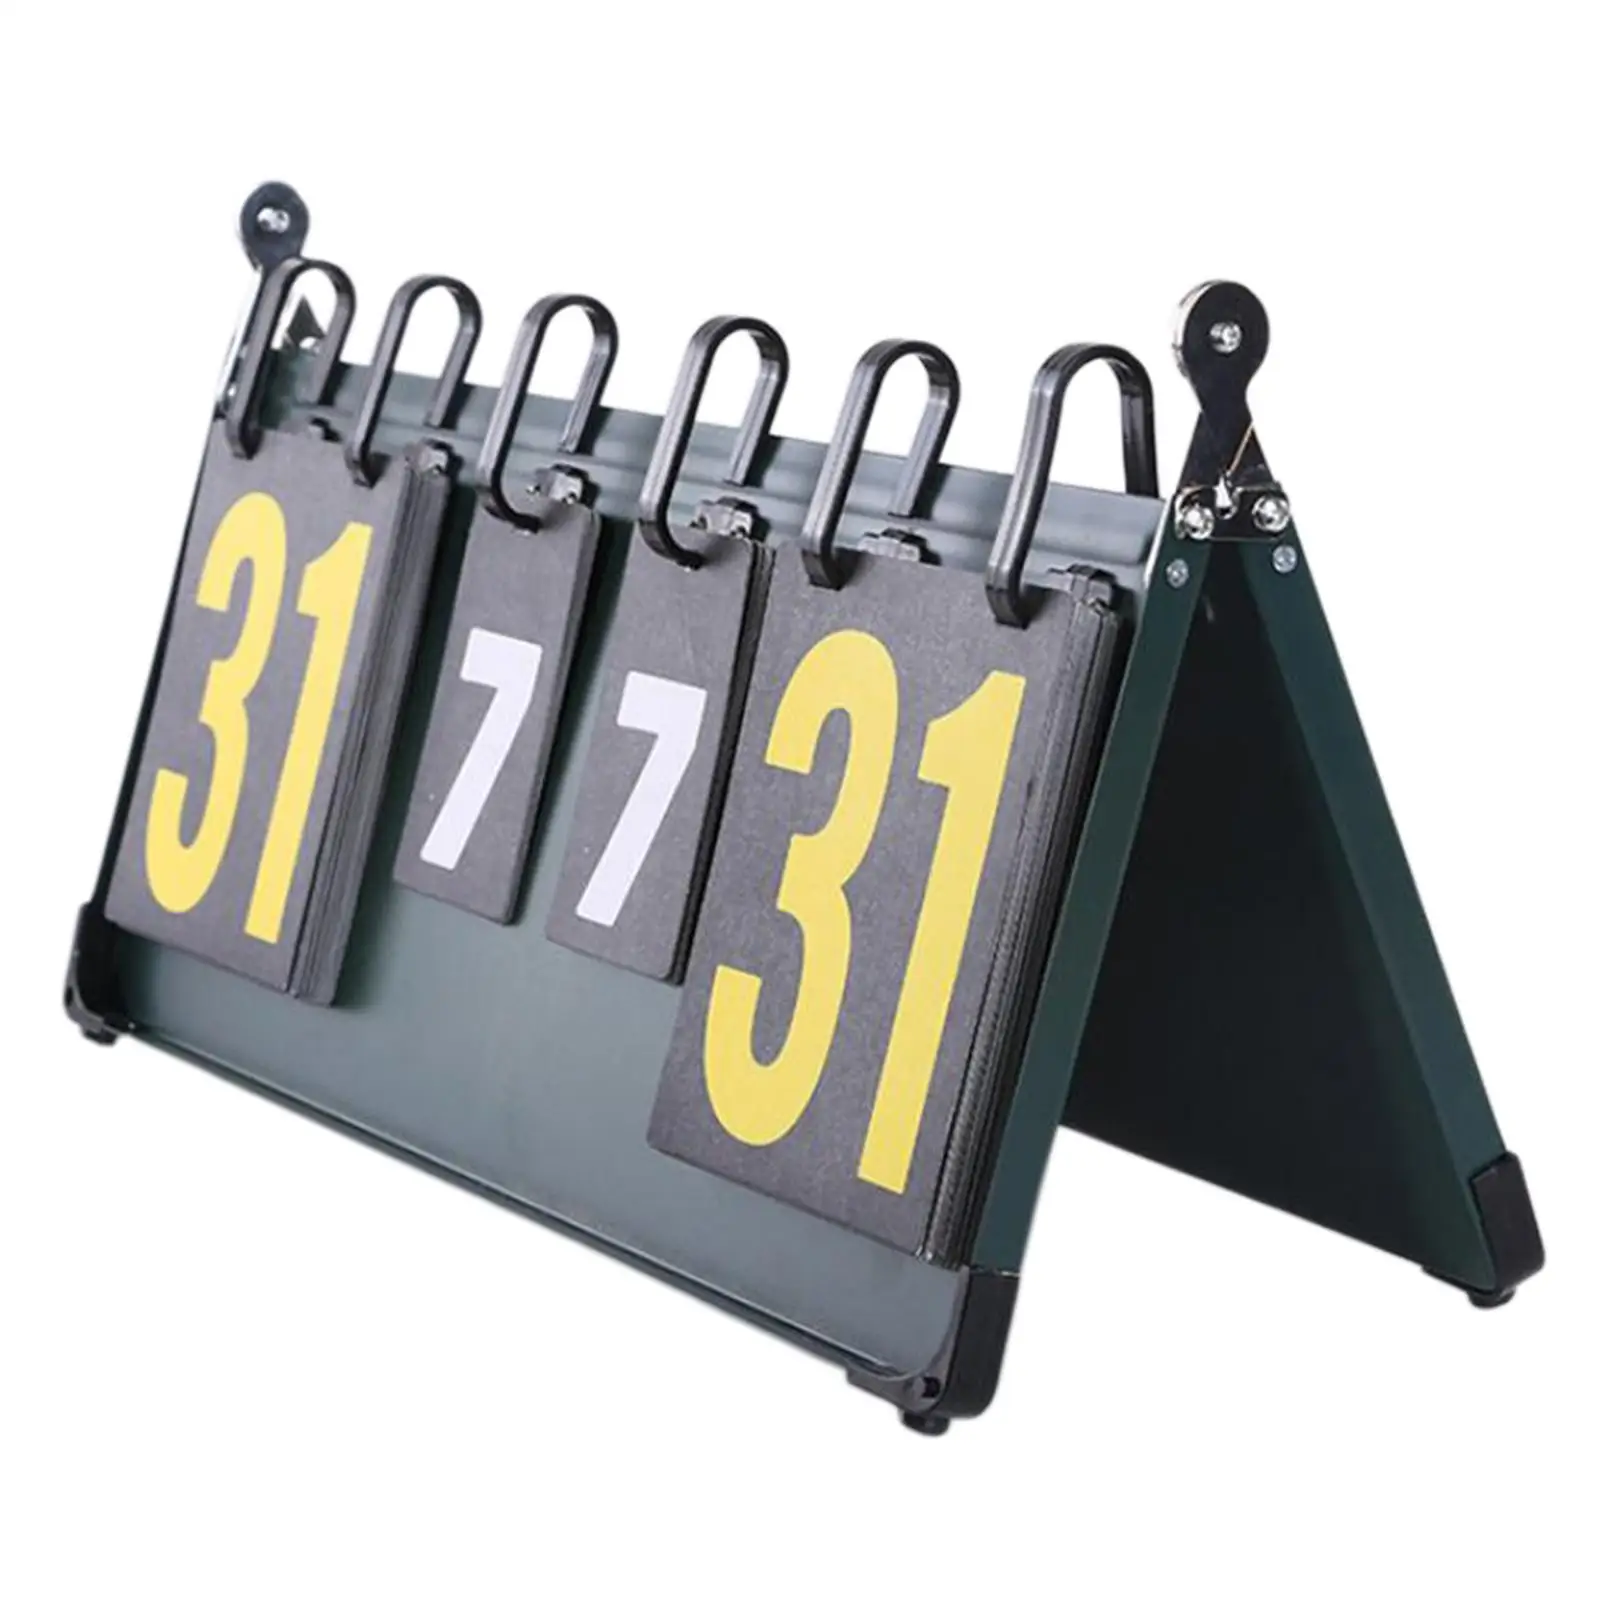 Table Scoreboard Professional Scorekeeper Score Keeper Score Board for